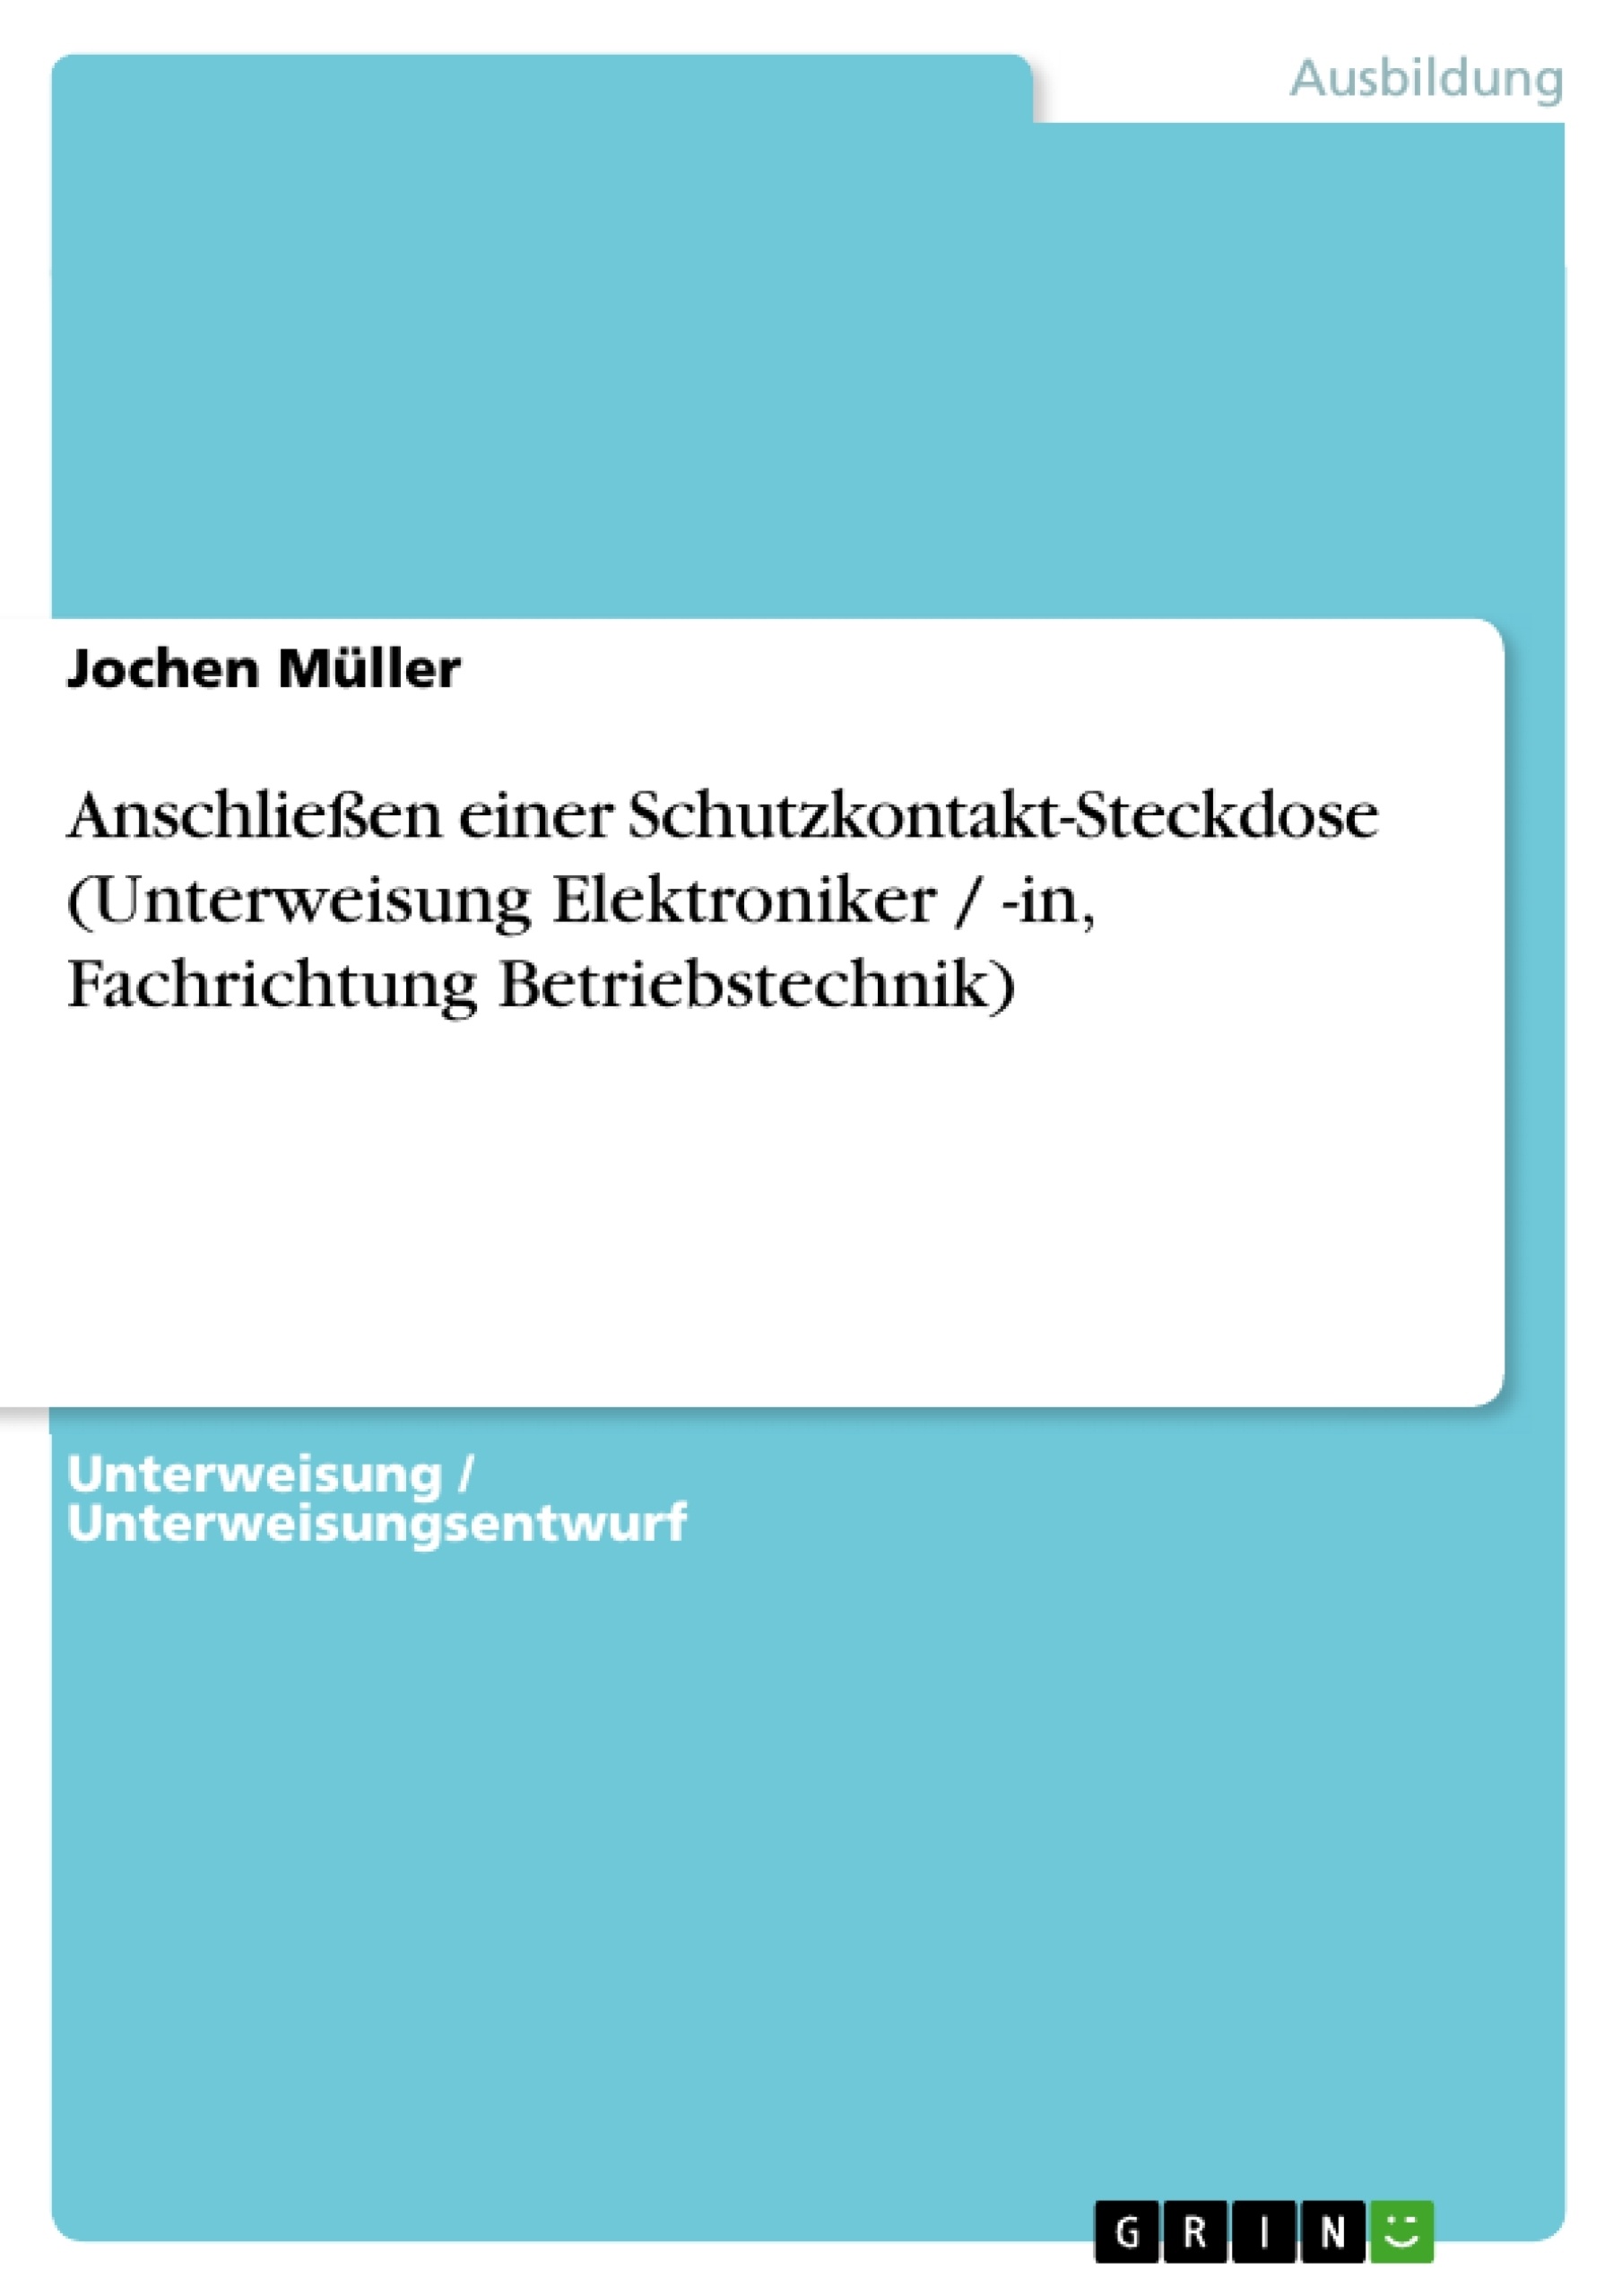 Title: Anschließen einer Schutzkontakt-Steckdose (Unterweisung Elektroniker / -in, Fachrichtung Betriebstechnik)